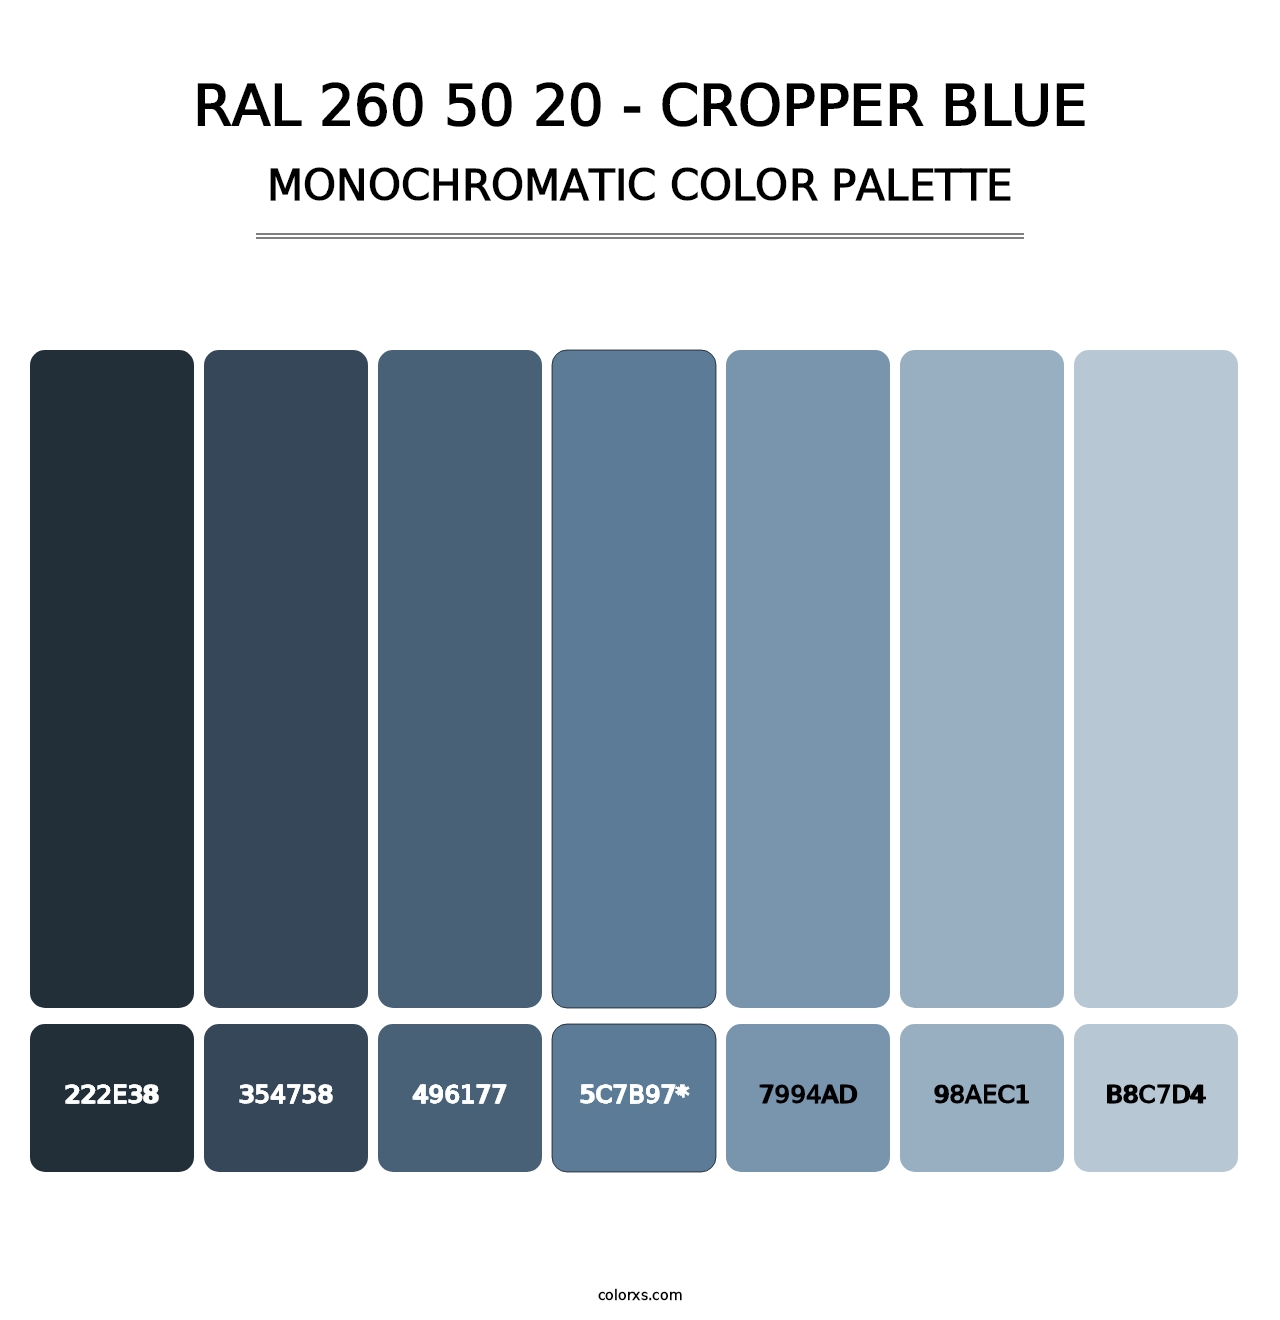 RAL 260 50 20 - Cropper Blue - Monochromatic Color Palette